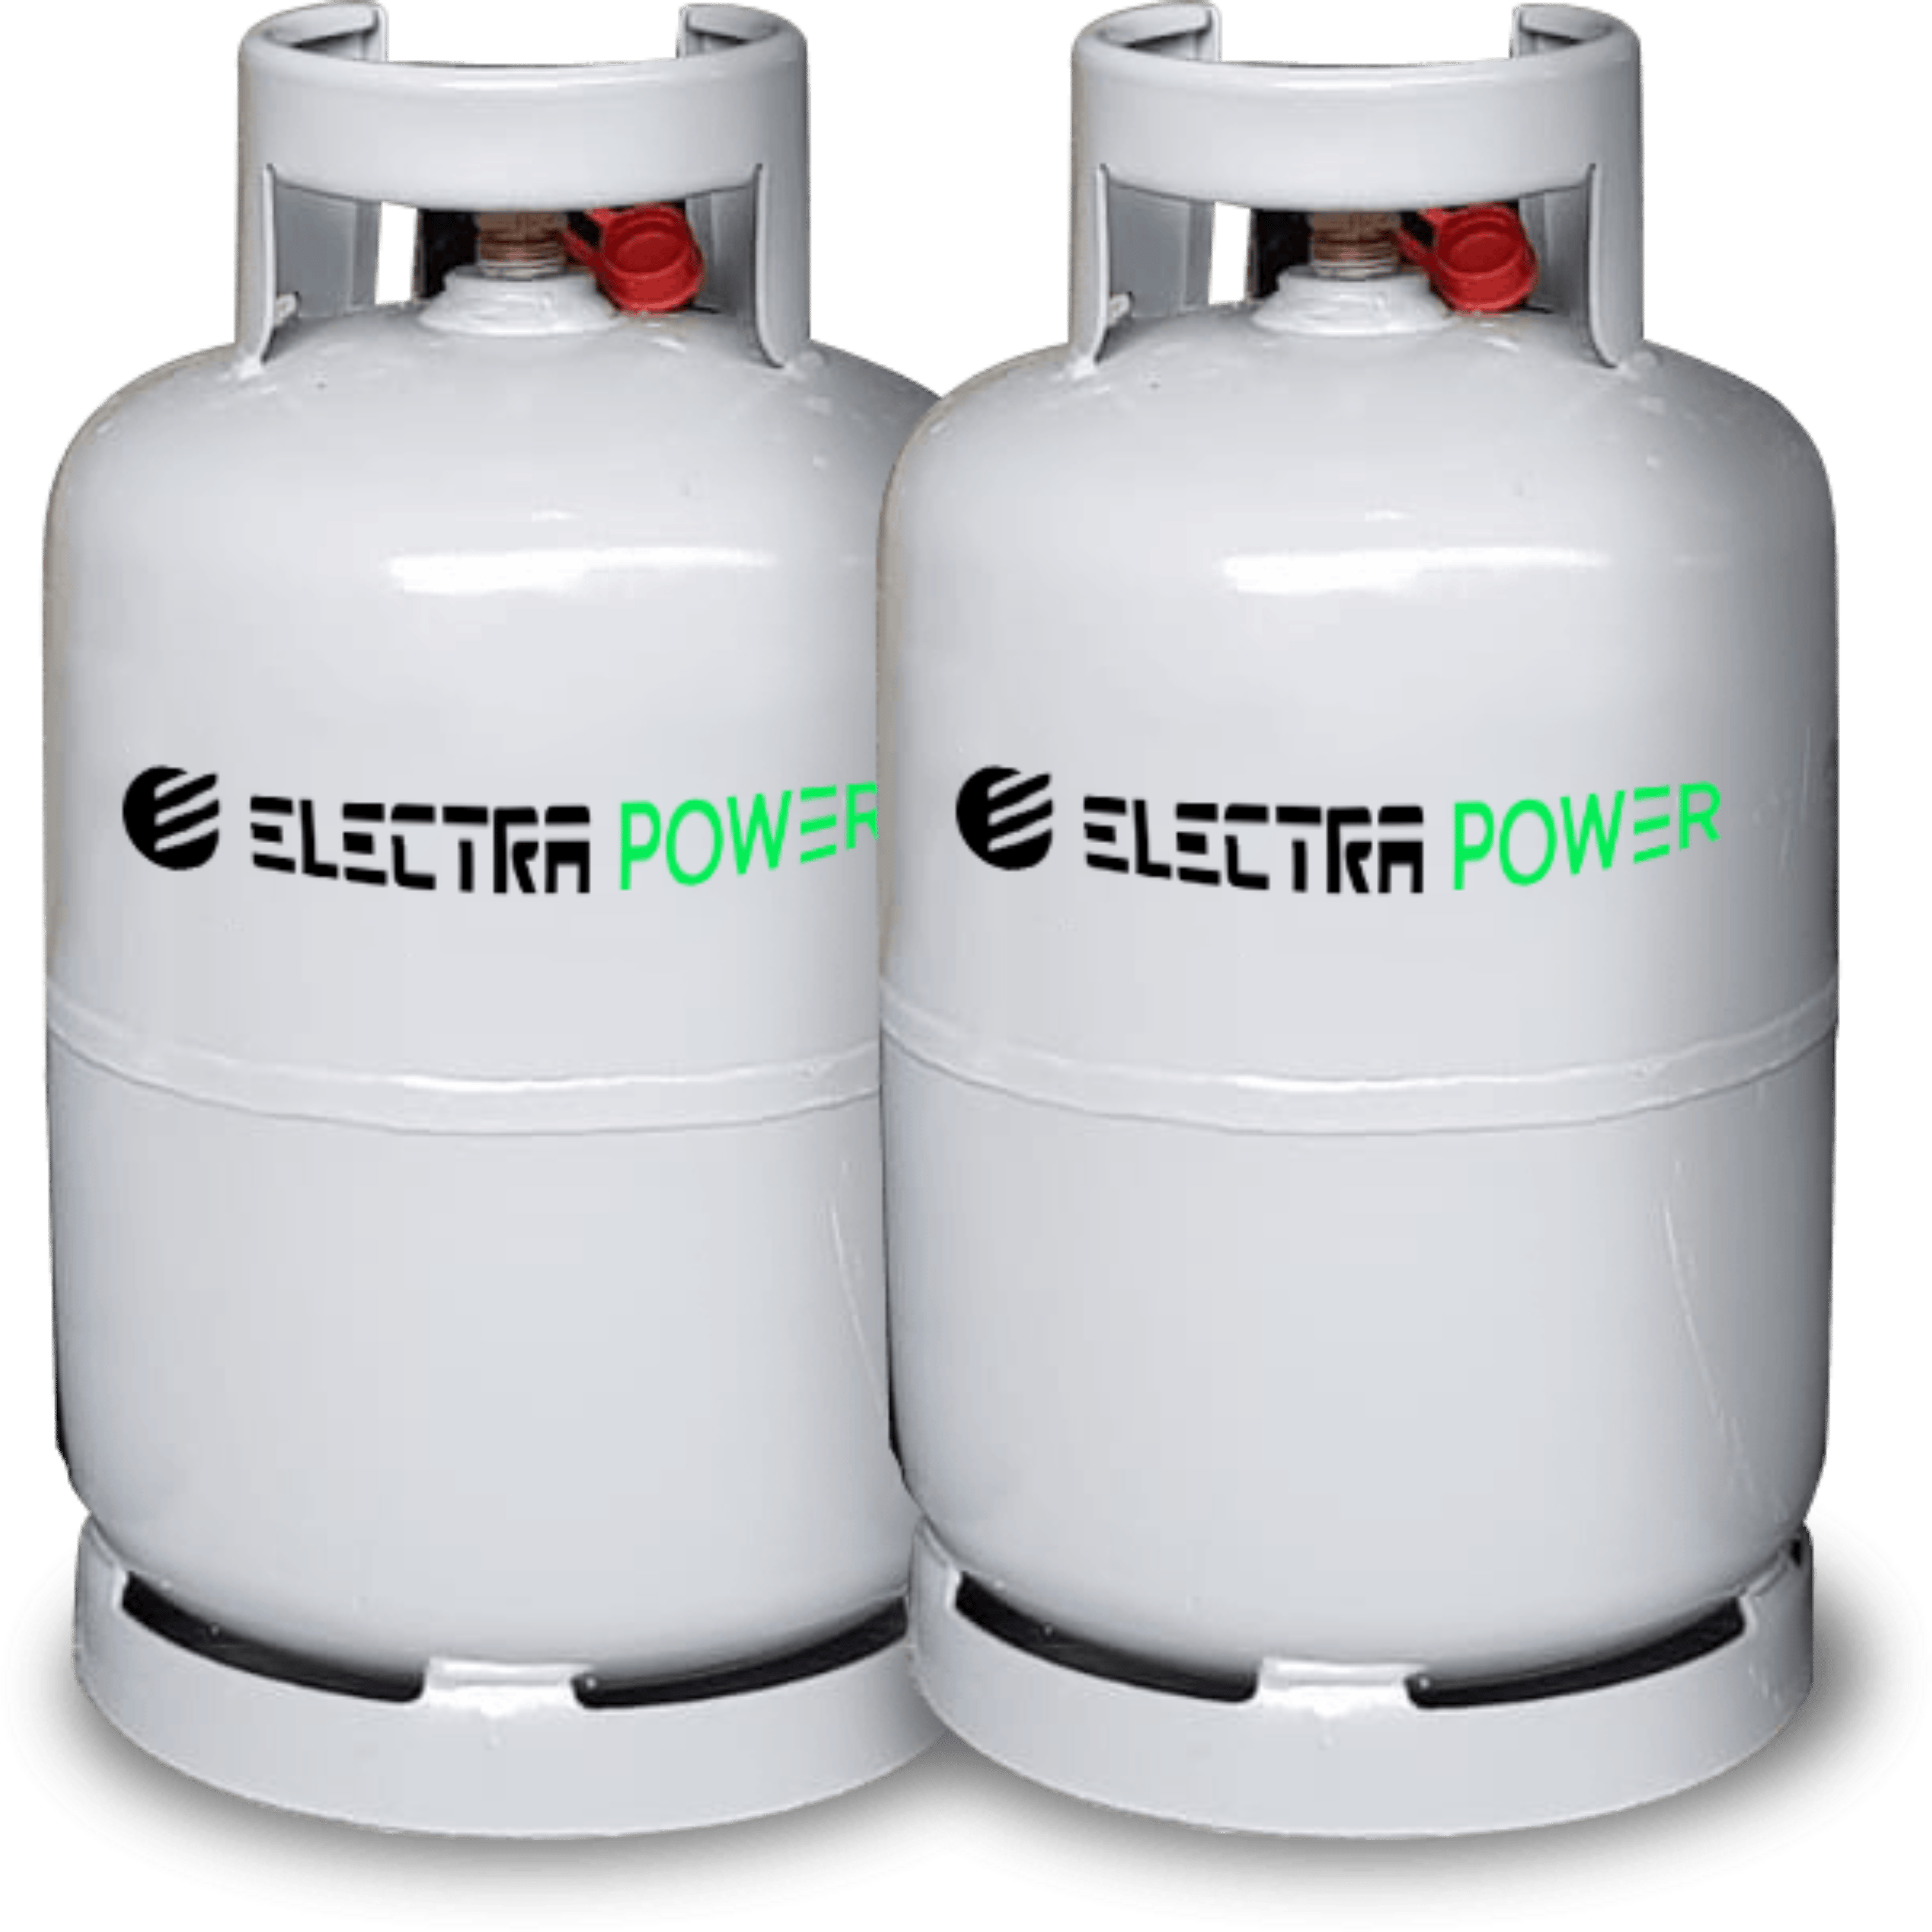 שני בלוני גז למנגל 5 קילו  לשימוש רב פעמי + ערכת חיבור למנגל Electra Power